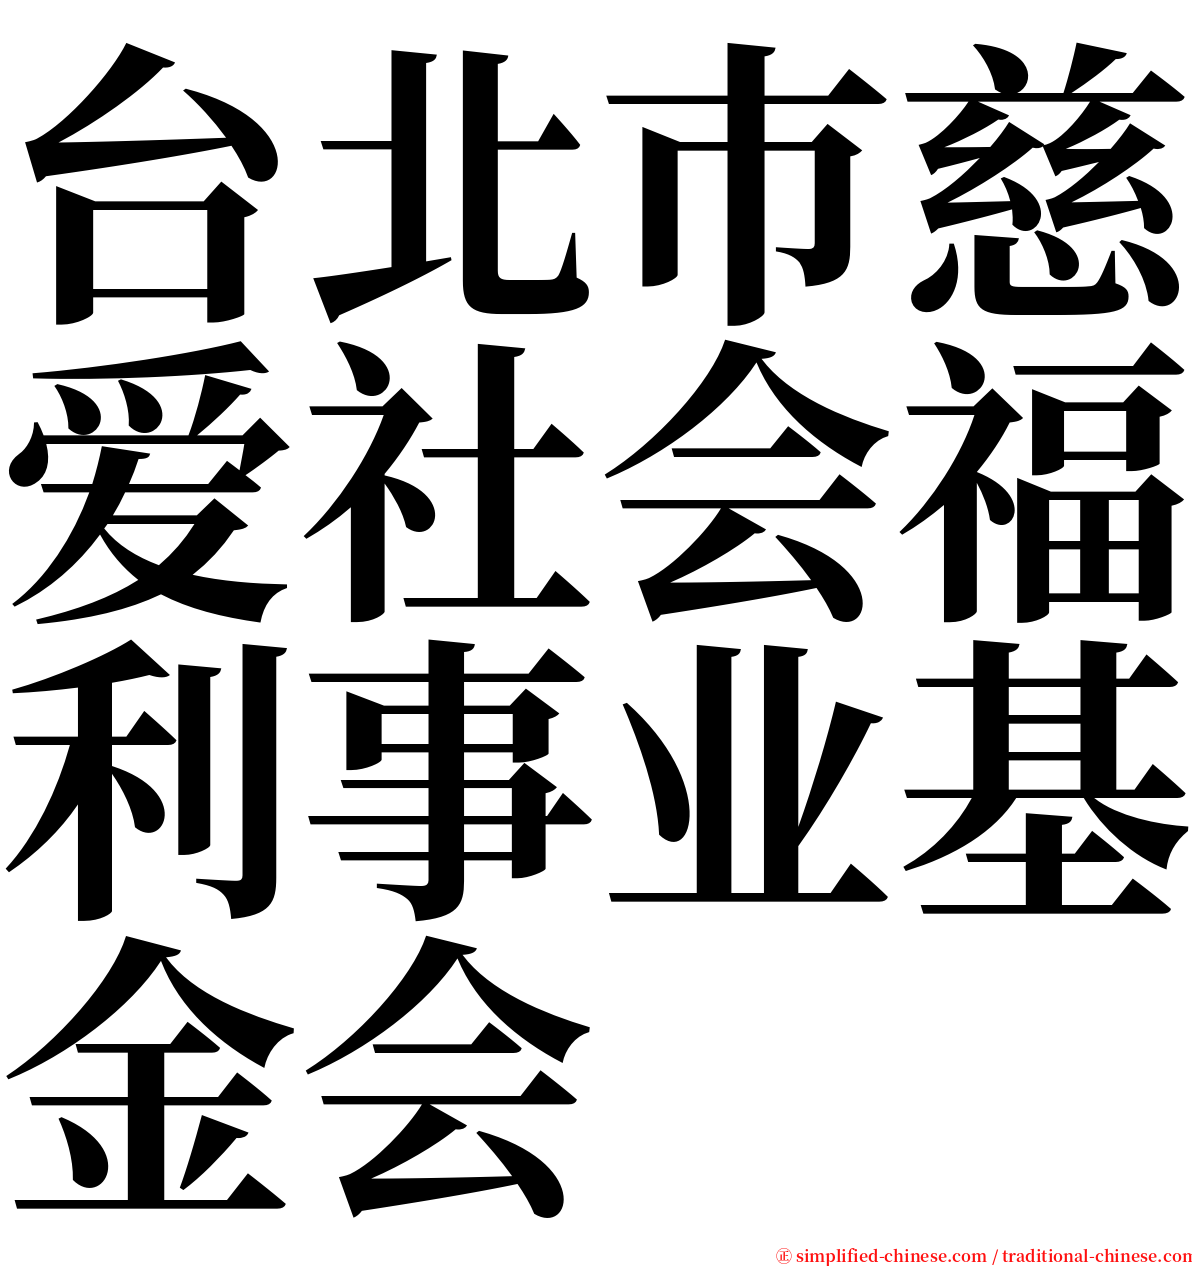 台北巿慈爱社会福利事业基金会 serif font